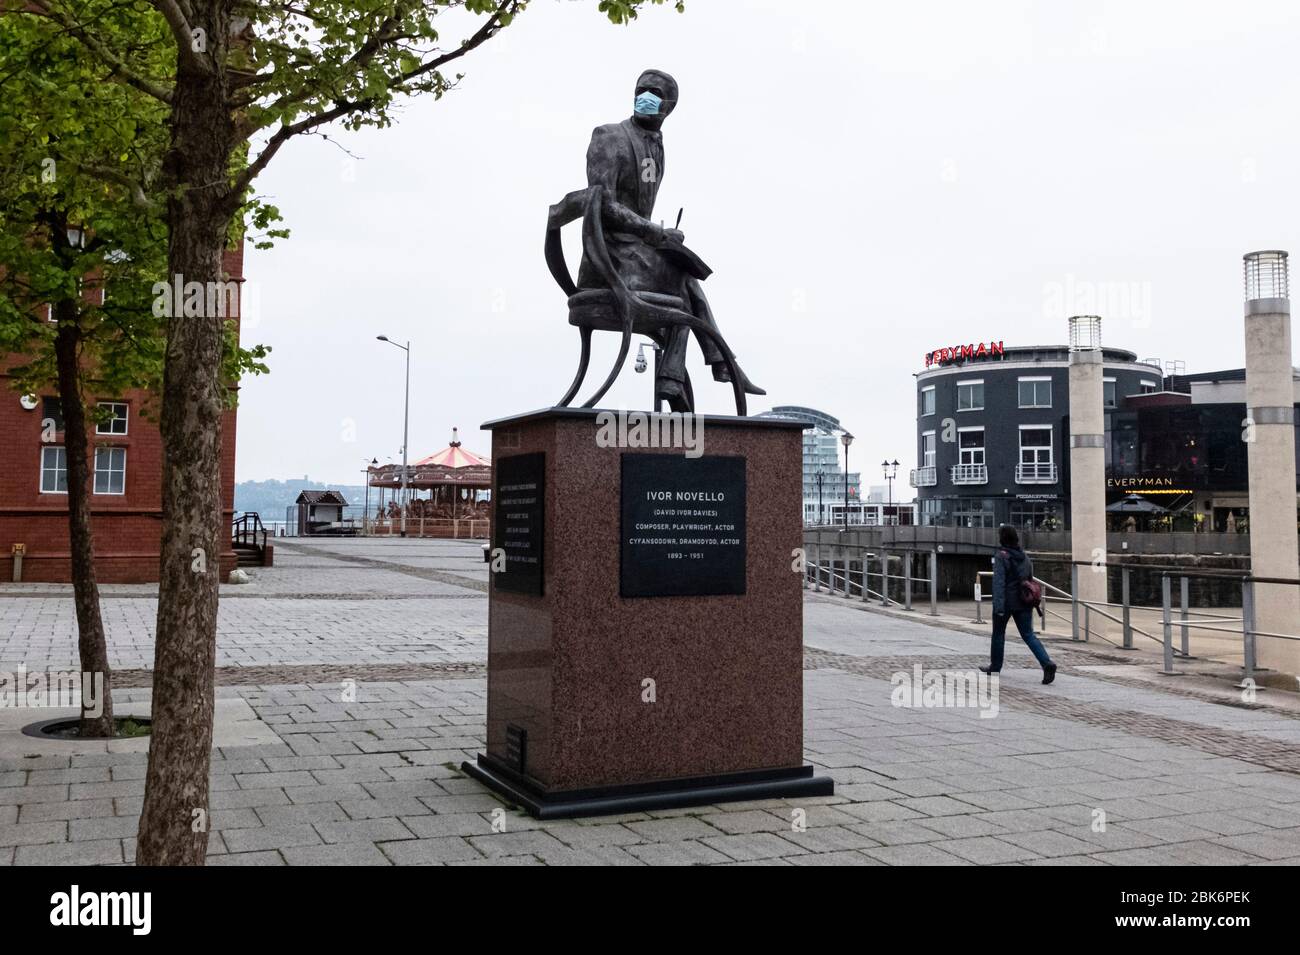 La estatua del compositor y actor galés Ivor Novello en Cardiff Bay, Gales, tiene su cara cubierta con una máscara durante la pandemia del coronavirus COVID19 Foto de stock